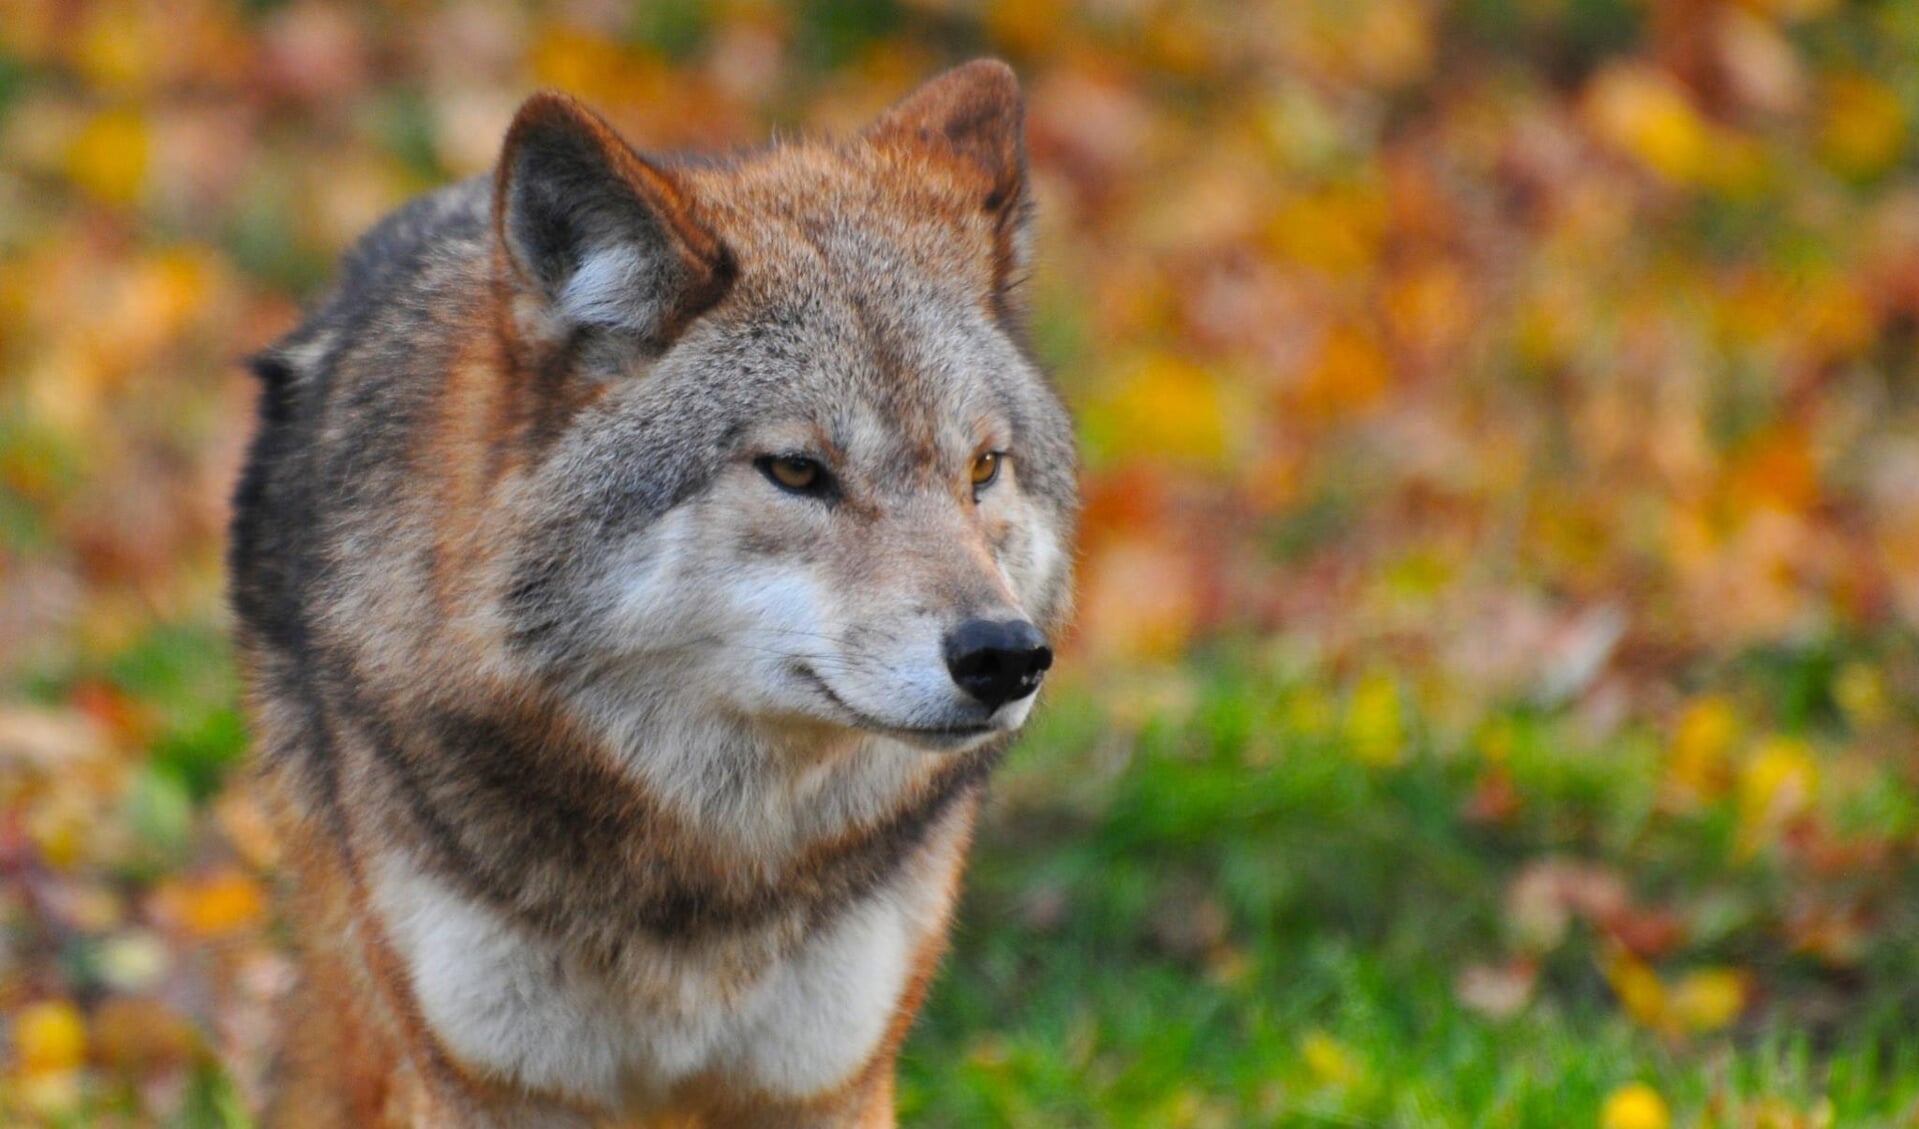 De directie van Het Nationale Park De Hoge Veluwe mag de roedel wolven die in het park leeft niet vangen of doden. 